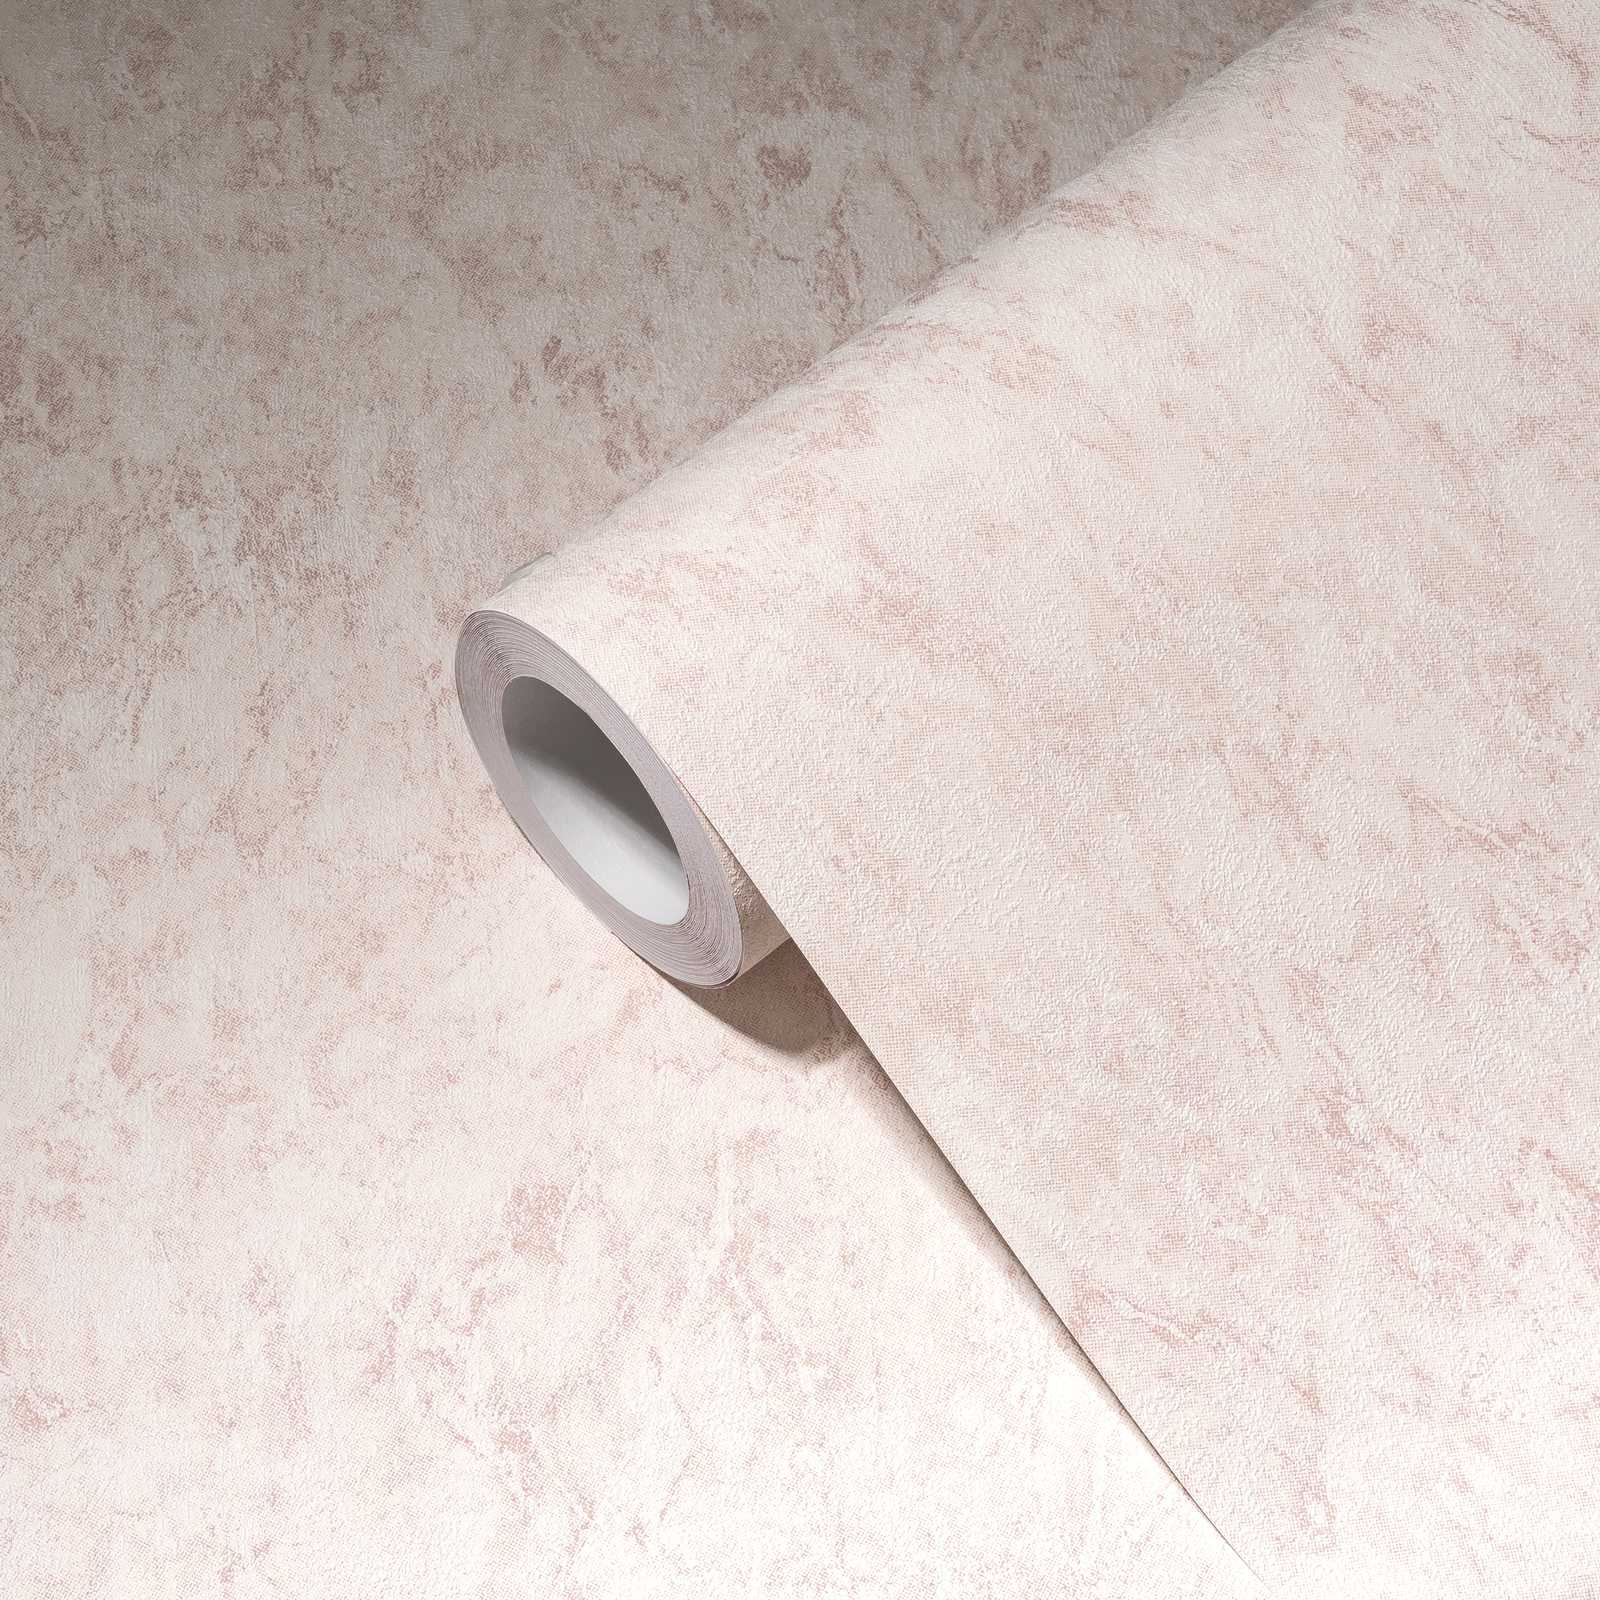             Papier peint uni avec effet texturé & dessin chiné - rose, crème
        